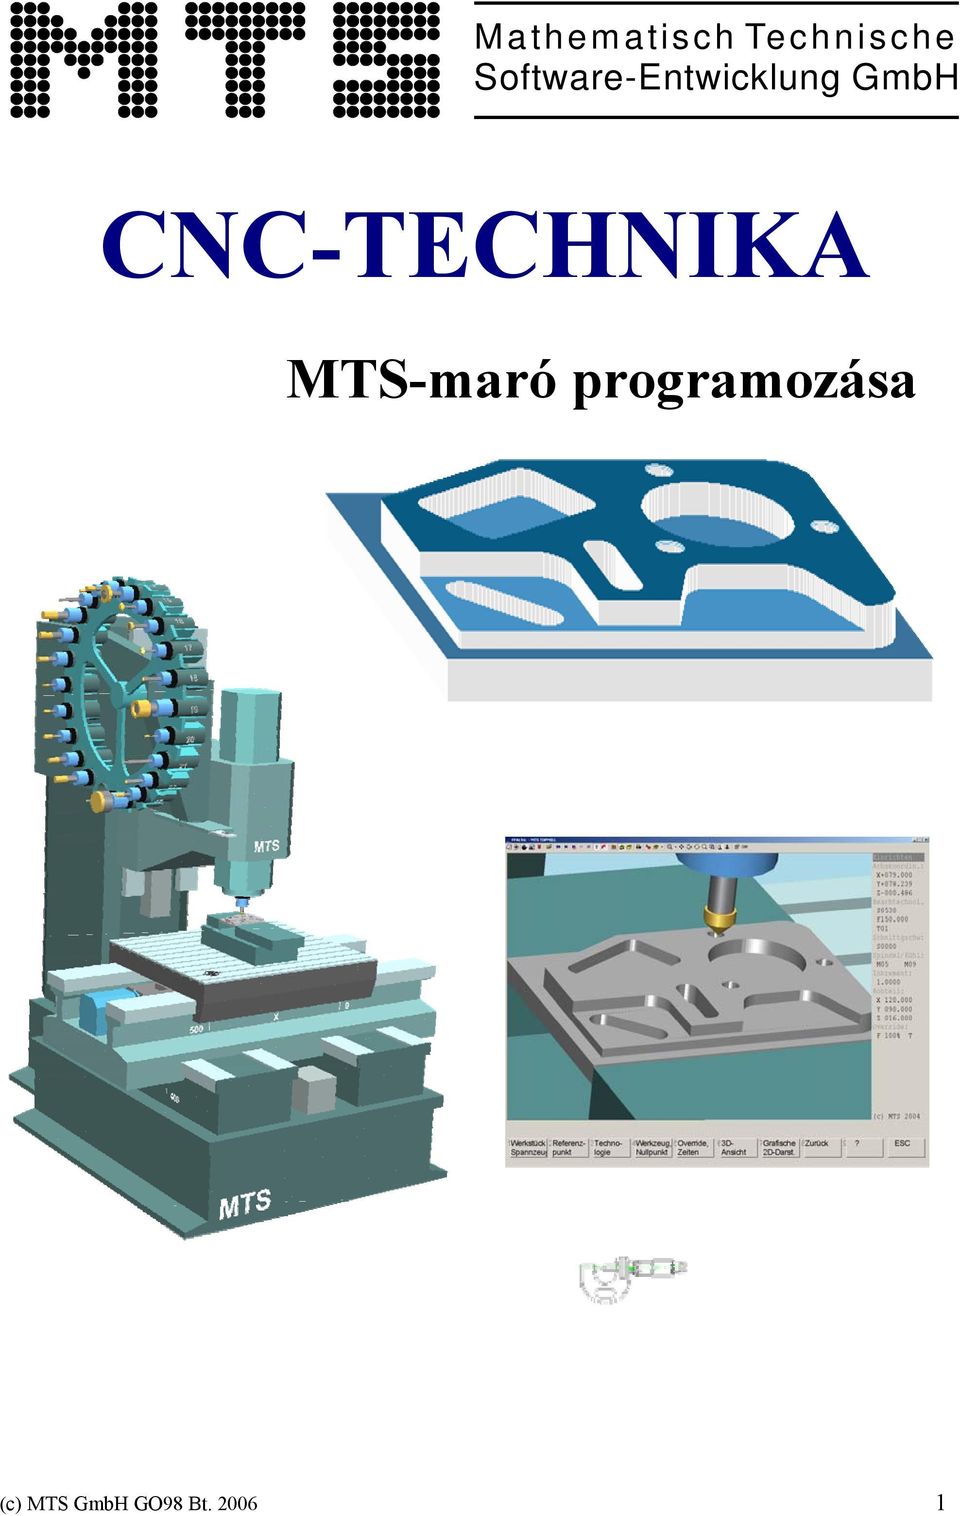 CNC-TECHNIKA MTS-maró